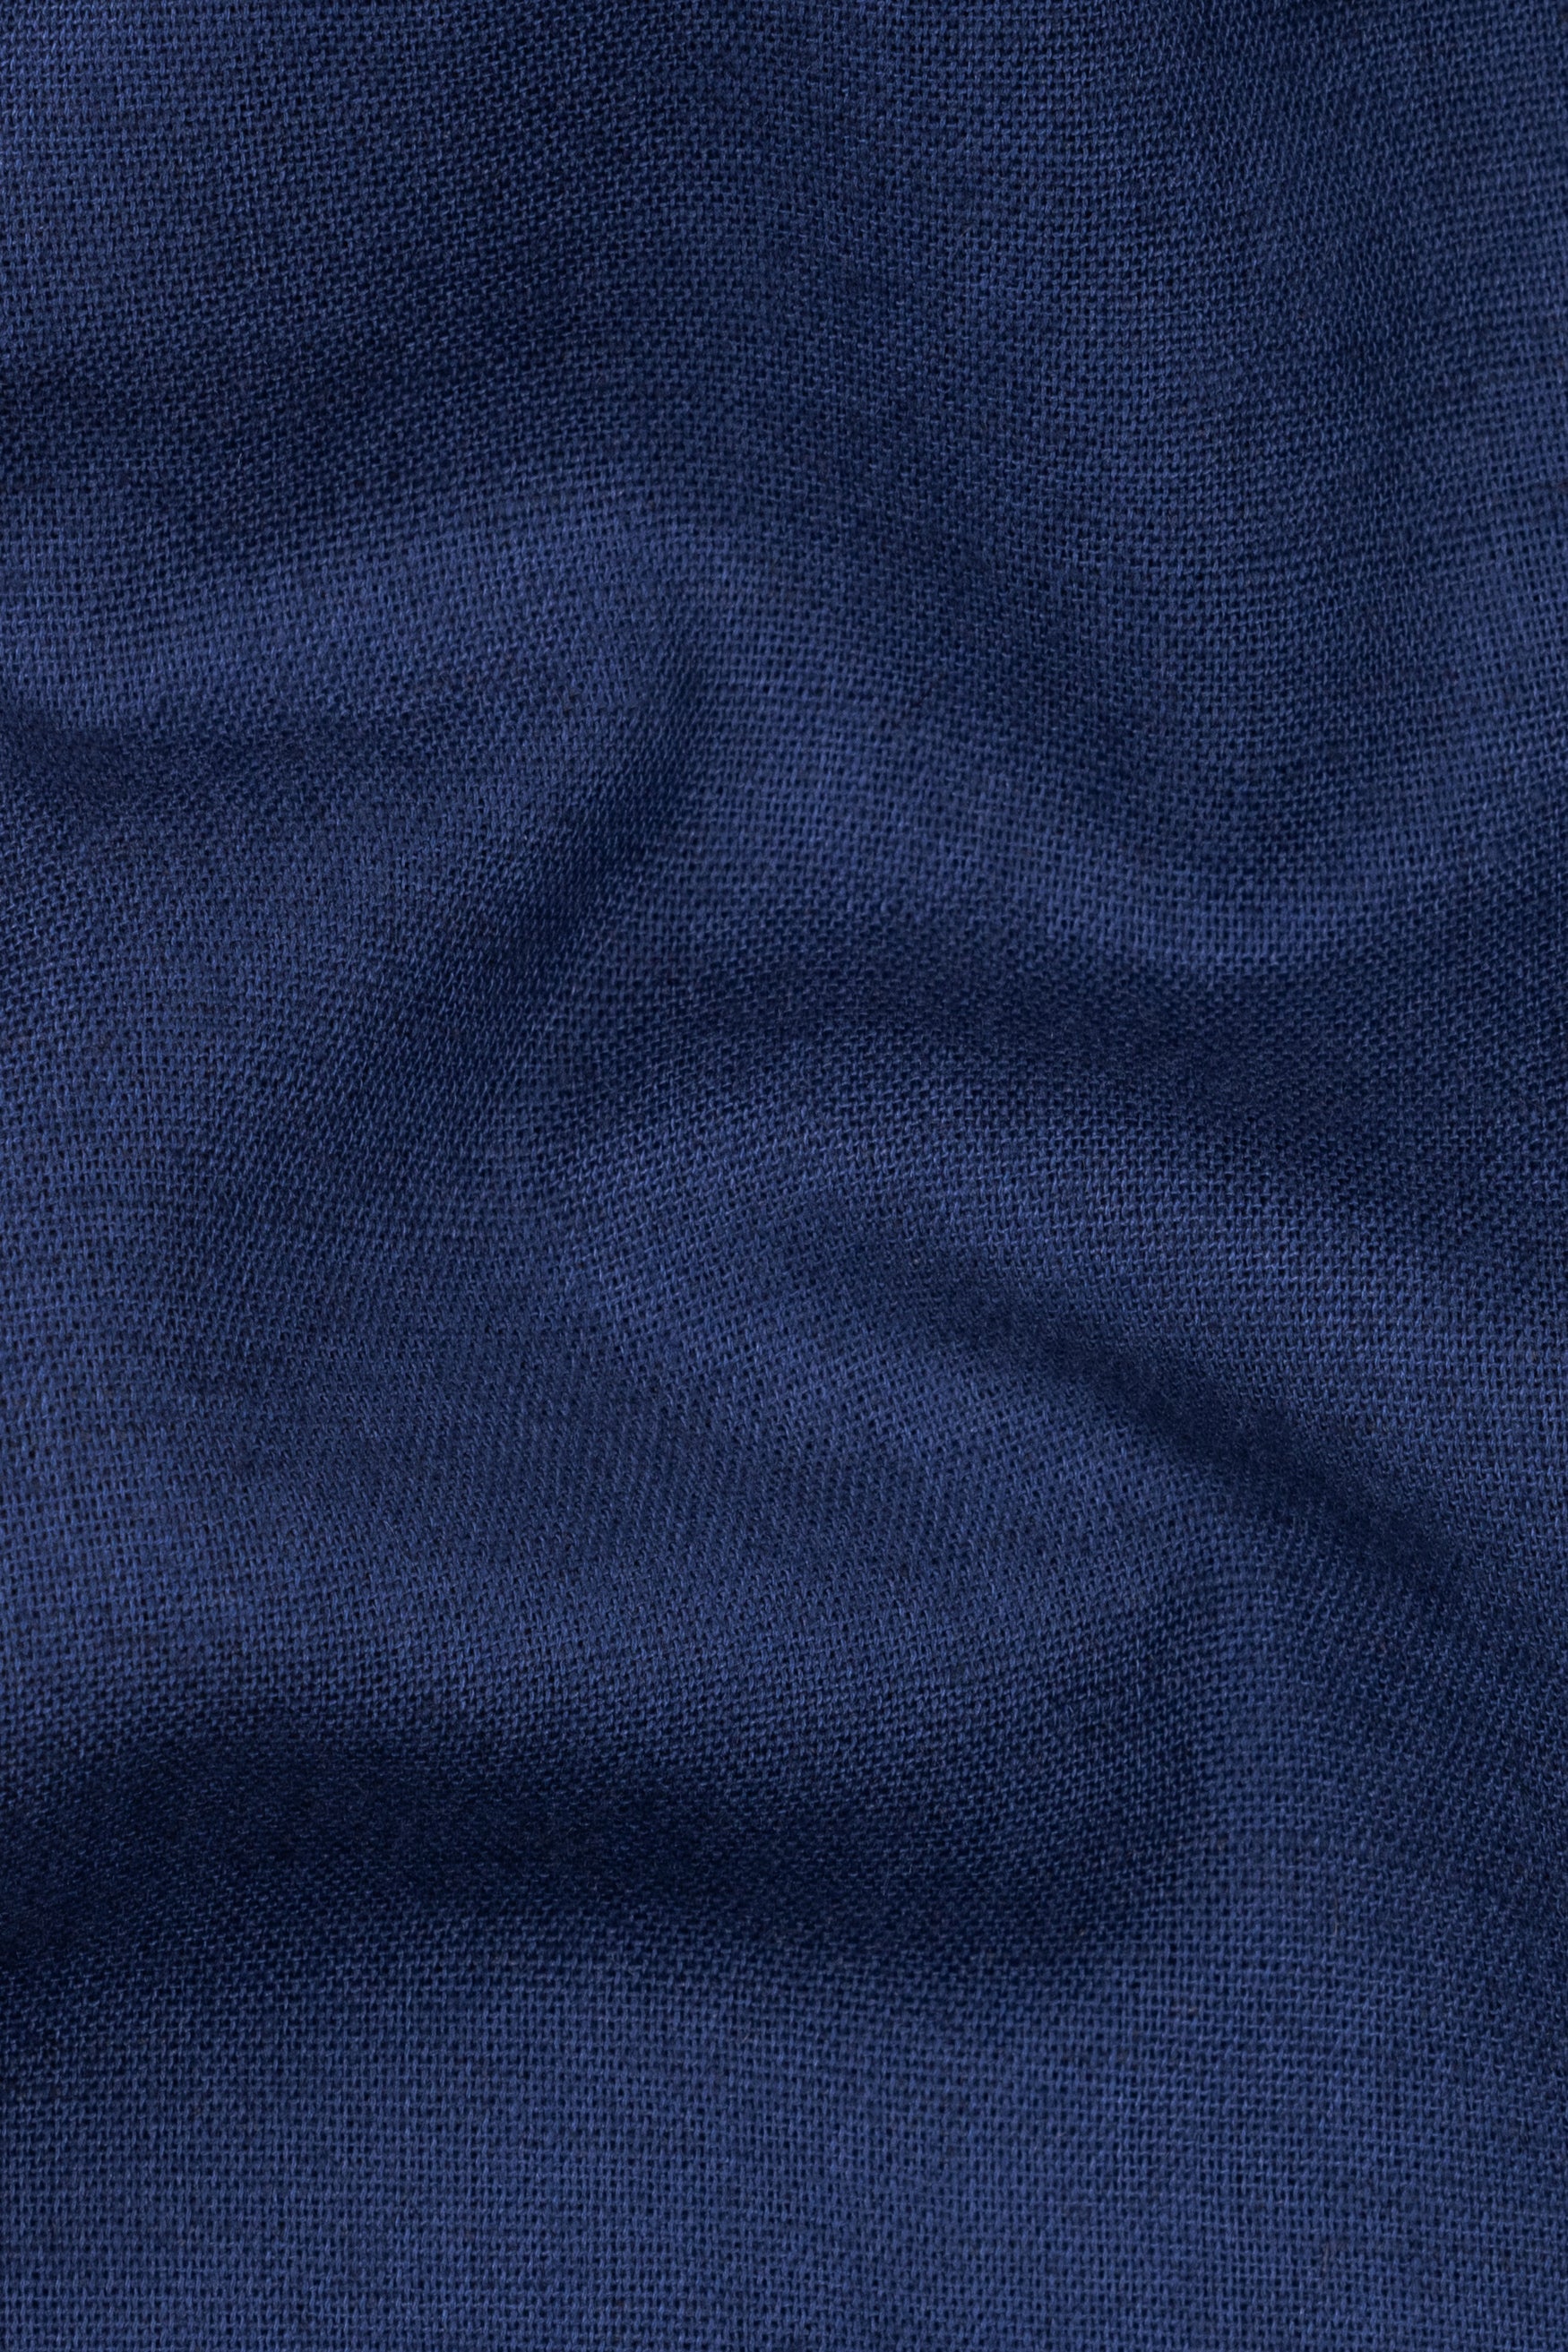 Cloud Burst Blue Textured Luxurious Linen Shorts